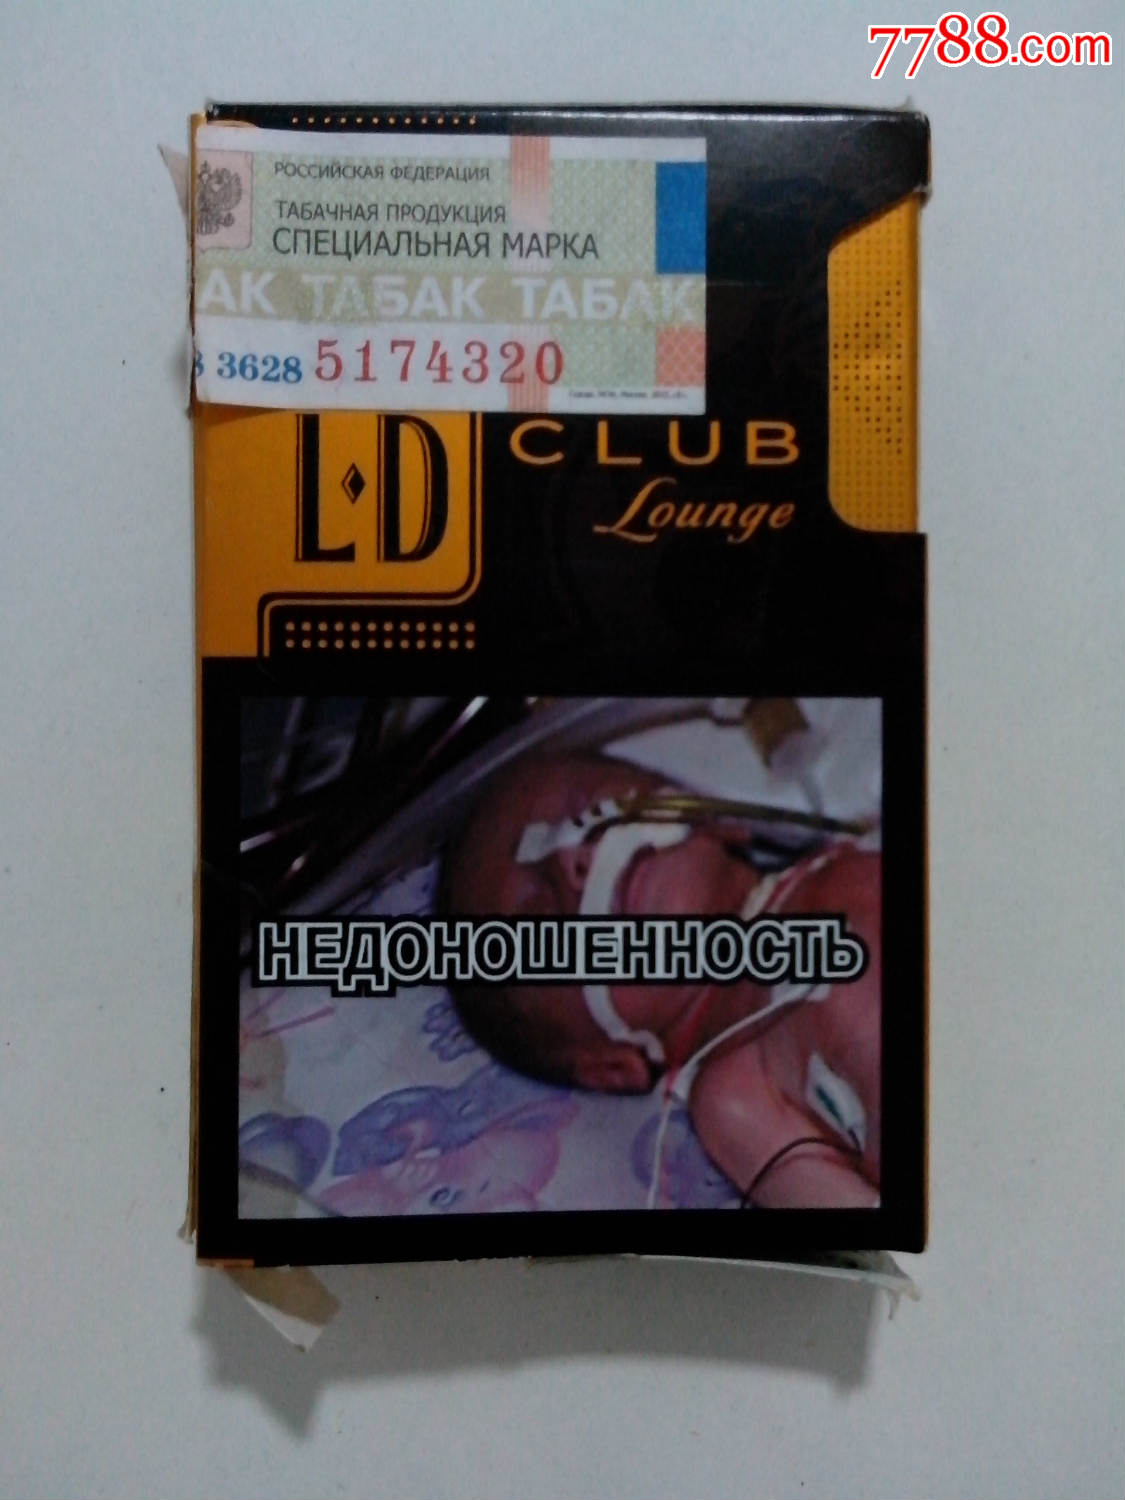 外国烟-价格:1元-se36386618-烟标/烟盒-零售-7788